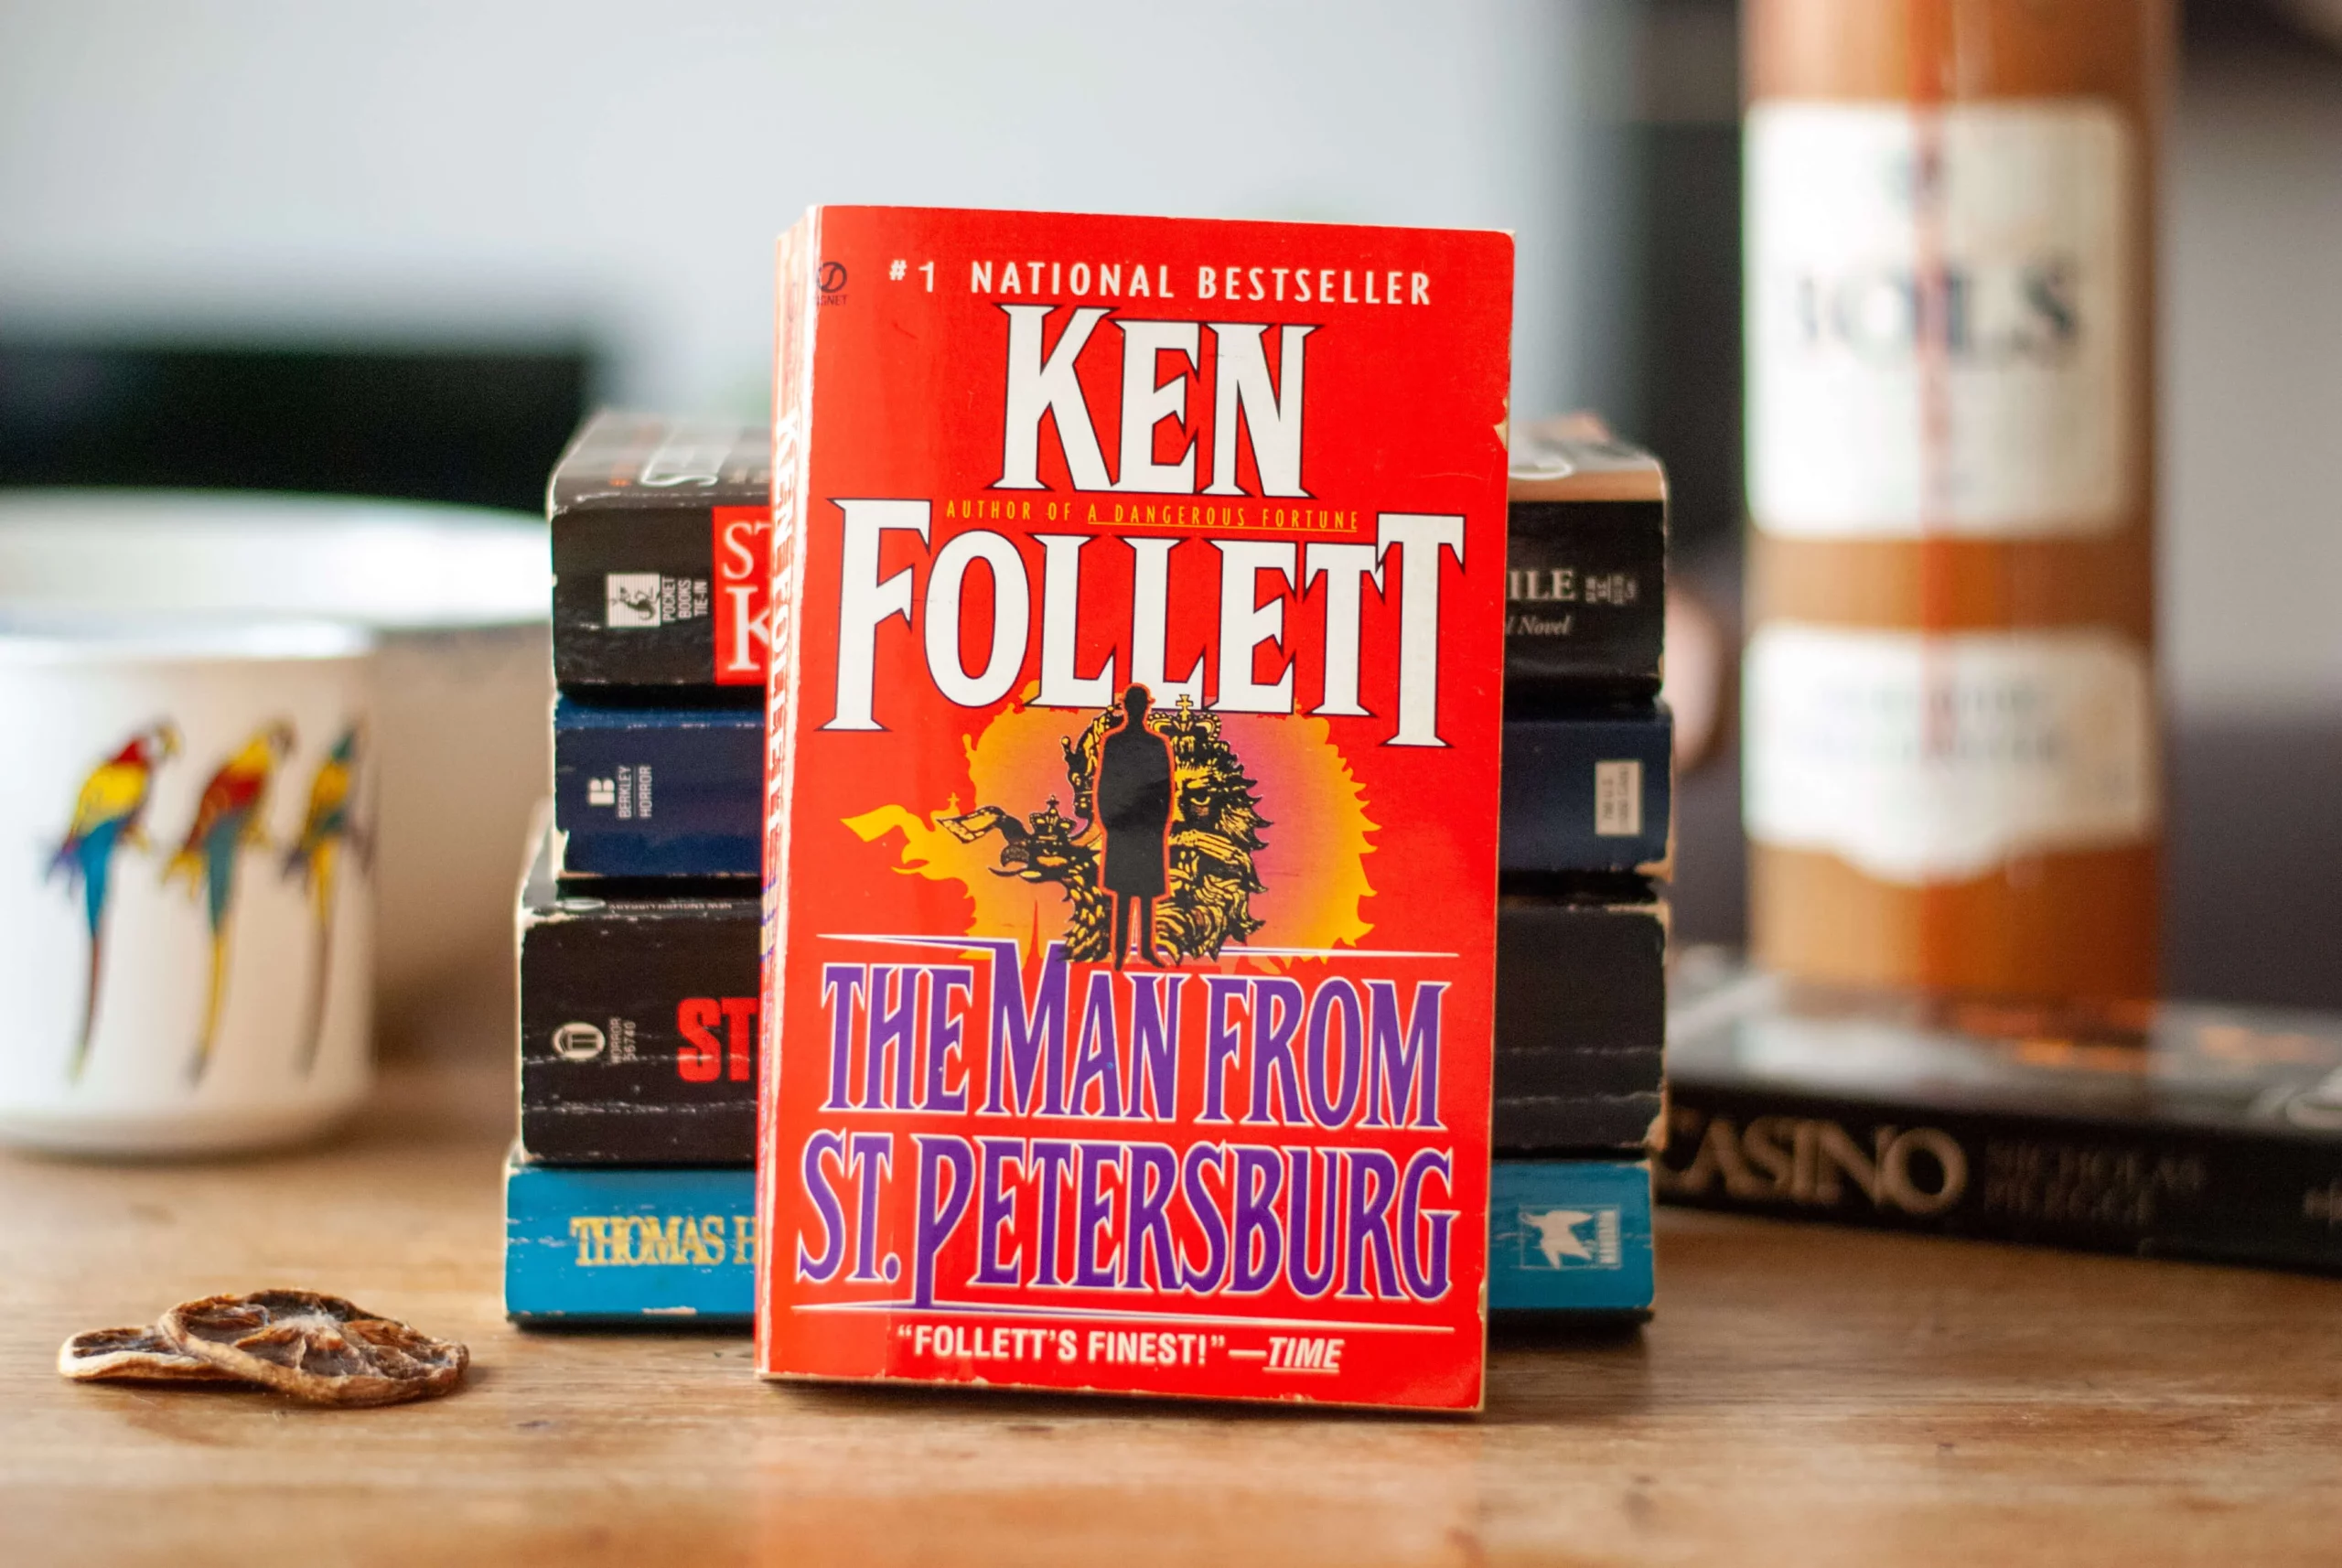 The Man from St. Petersburg book by Ken Follett